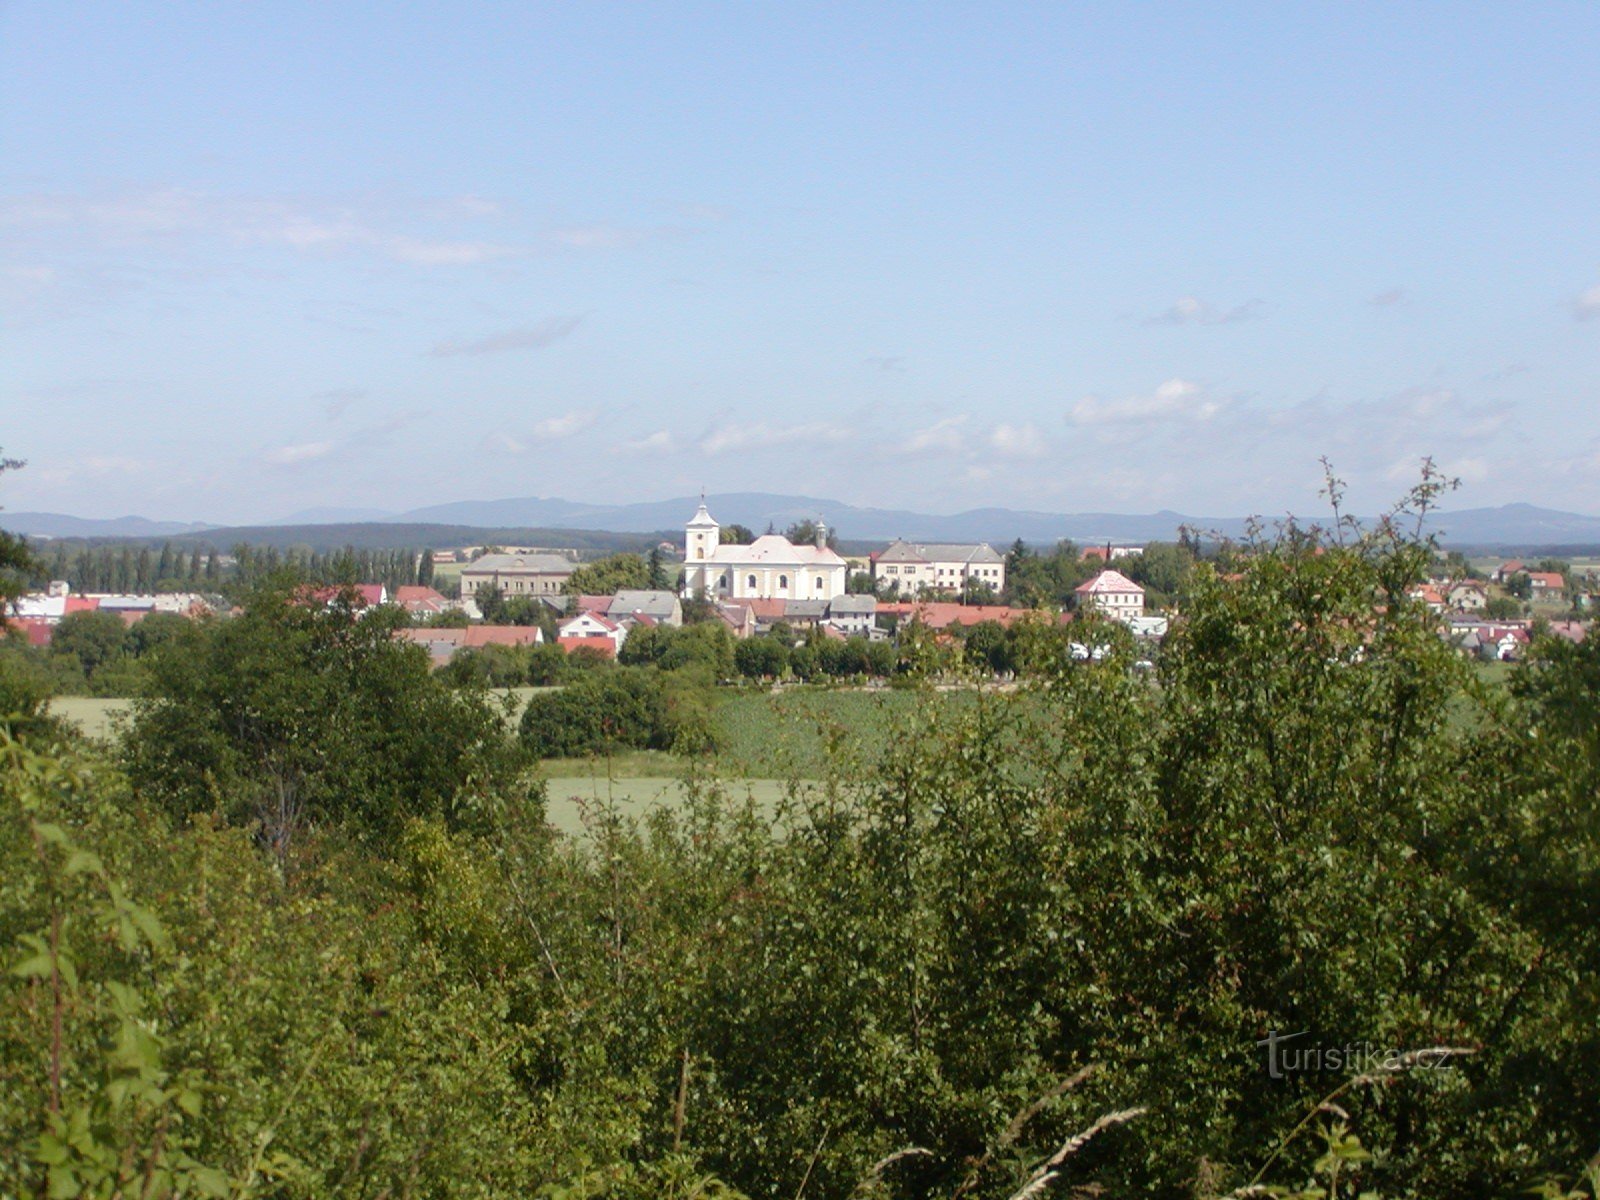 Veselský háj - Kákovice, w tle widok na Vysoké Veselí i grzbiet Kozák